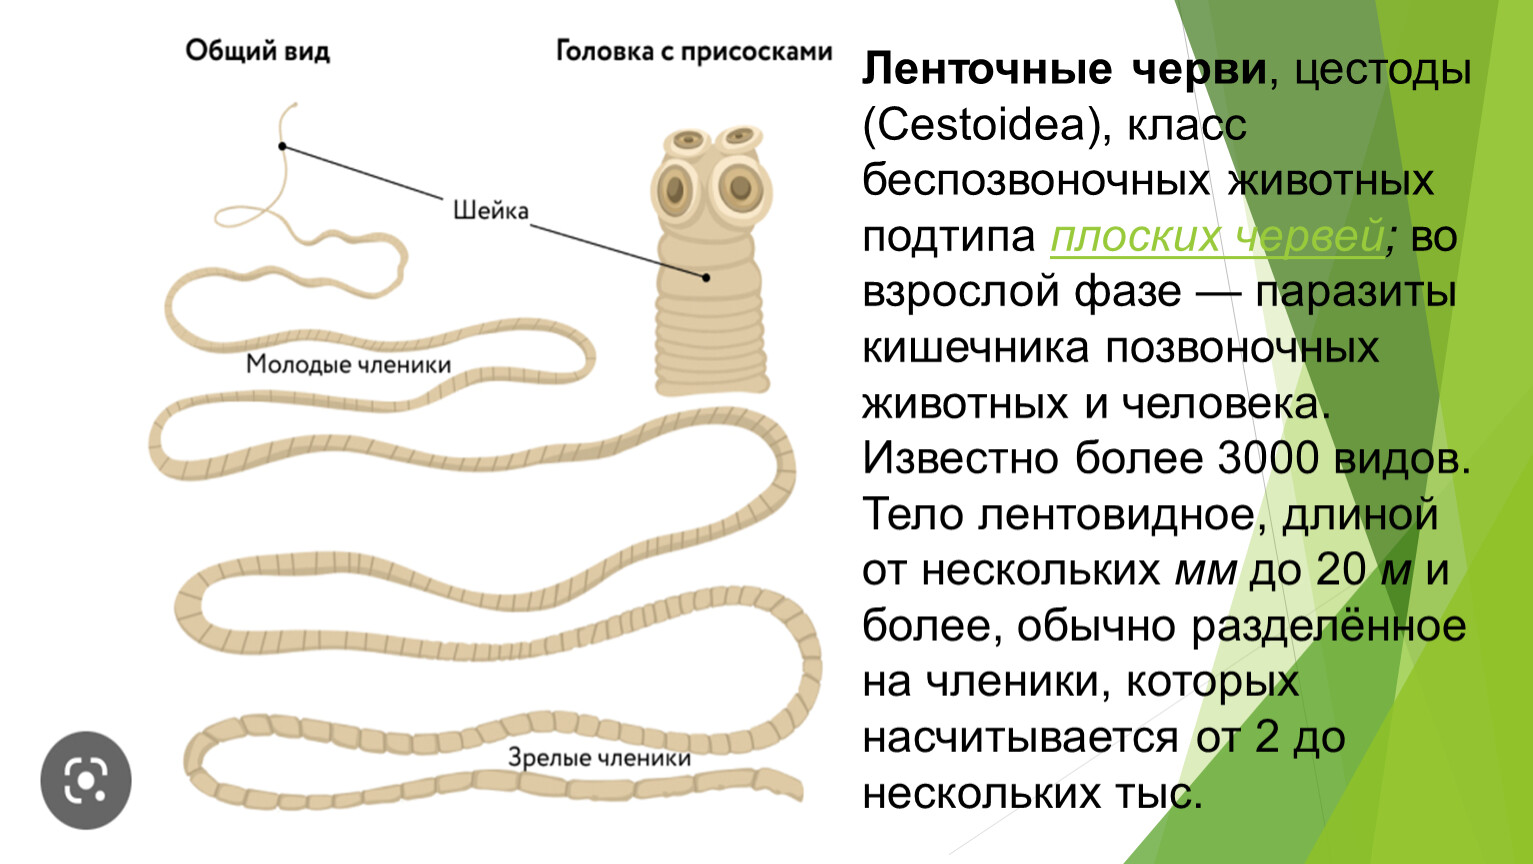 Ленточные и плоские черви. Паразитические ленточные черви. Ленточные черви (цестоды). Ленточные черви паразиты. Плоские черви ленточные.